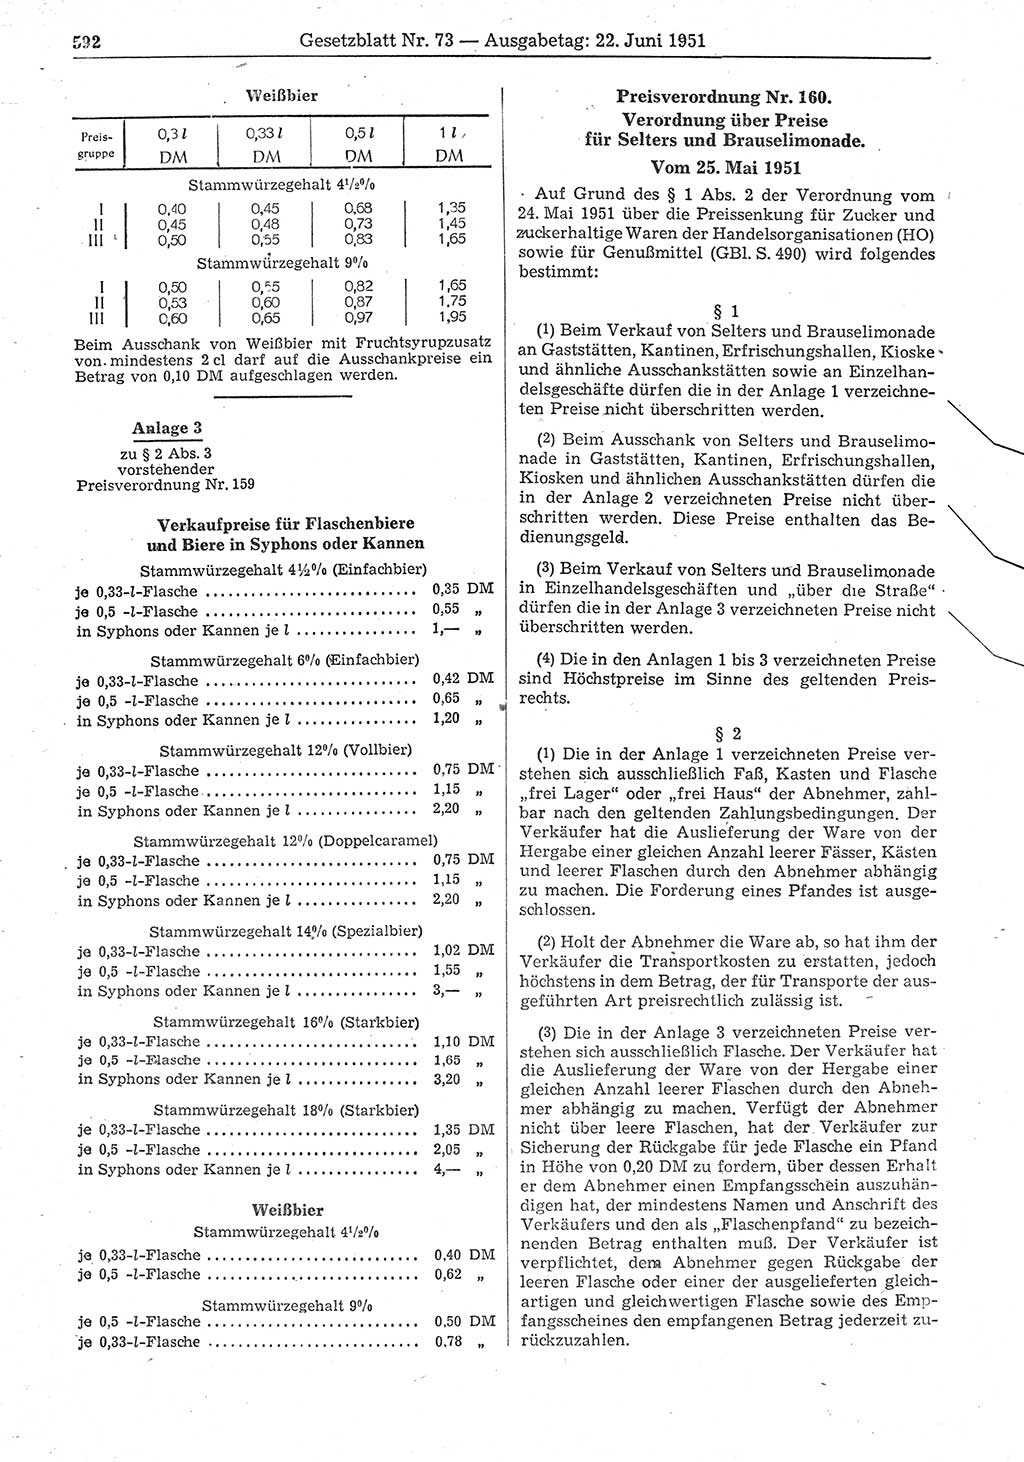 Gesetzblatt (GBl.) der Deutschen Demokratischen Republik (DDR) 1951, Seite 592 (GBl. DDR 1951, S. 592)